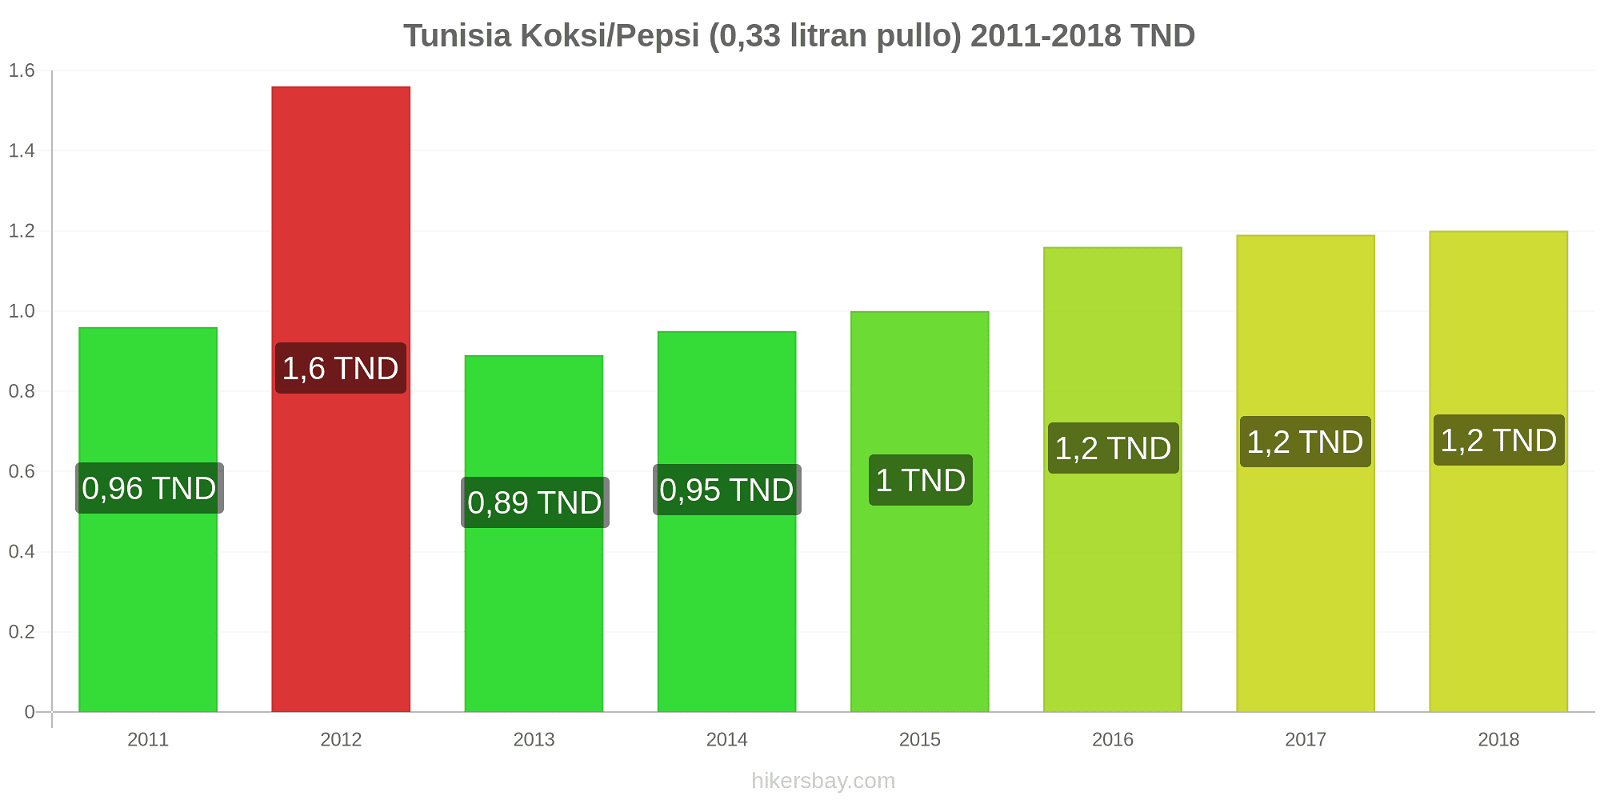 Tunisia hintojen muutokset Koksi/Pepsi (0,33 litran pullo) hikersbay.com